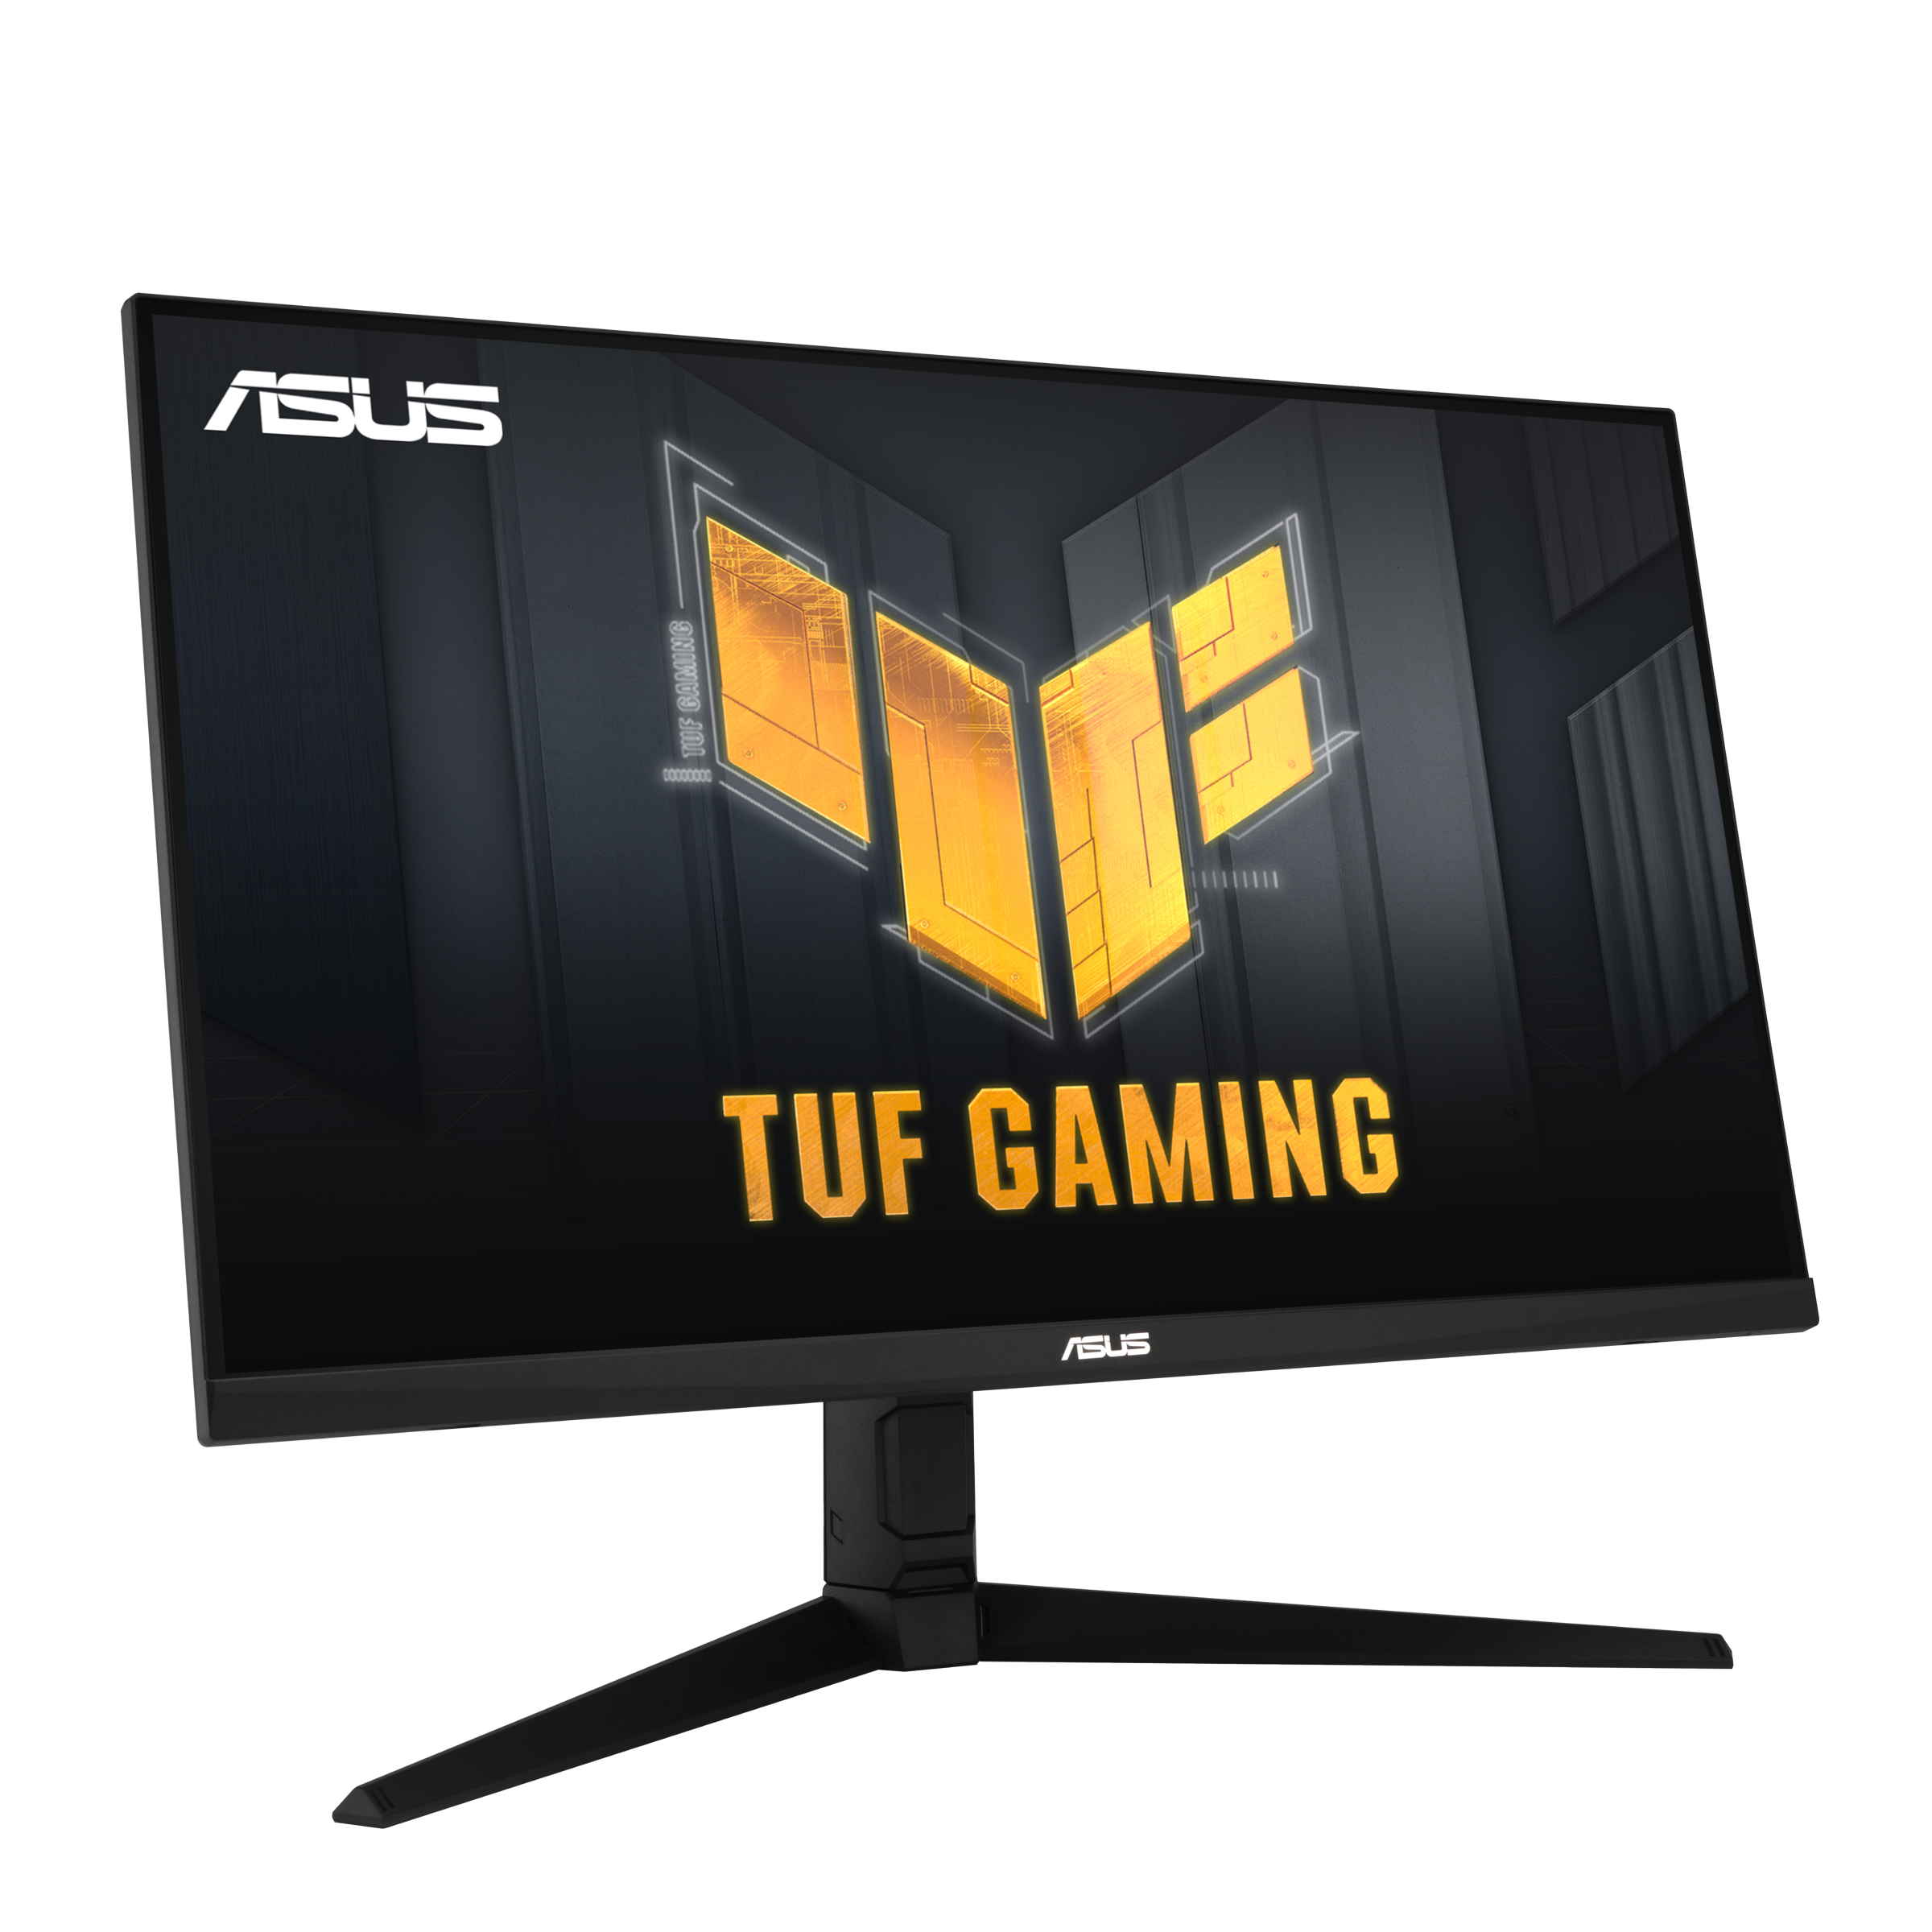 Immagine pubblicata in relazione al seguente contenuto: ASUS introduce il monitor TUF Gaming VG32AQL1A con pannello IPS QHD da 1ms | Nome immagine: news32277_ASUS-TUF-Gaming-VG32AQL1A_3.png